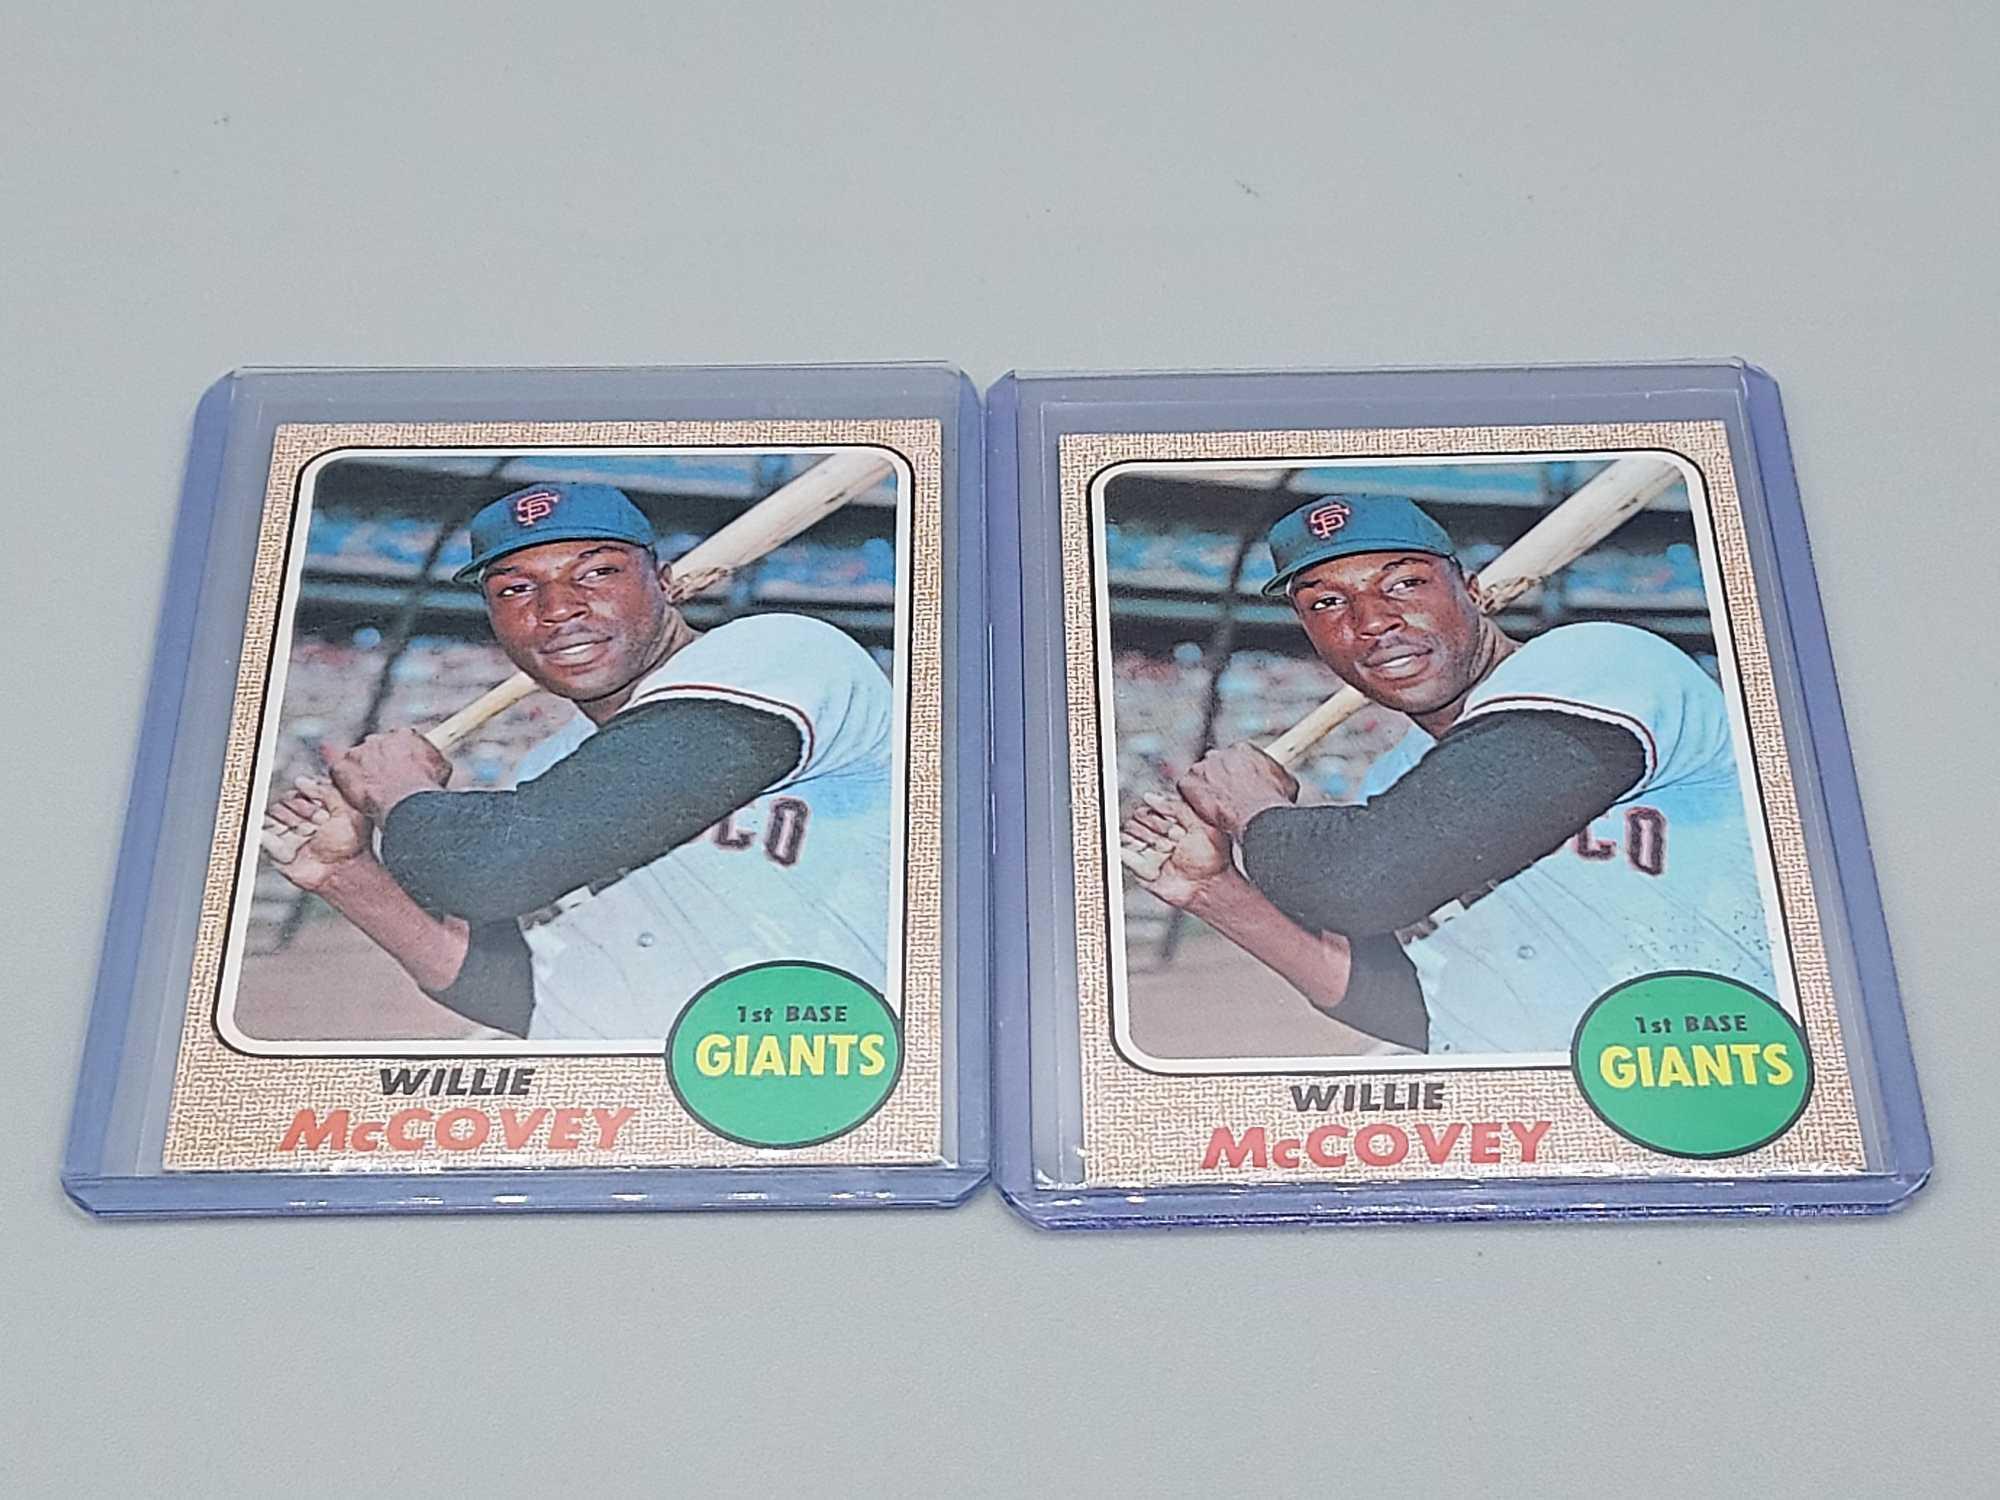 8 Topps Willie McCovey Baseball Cards 1961 - 1972